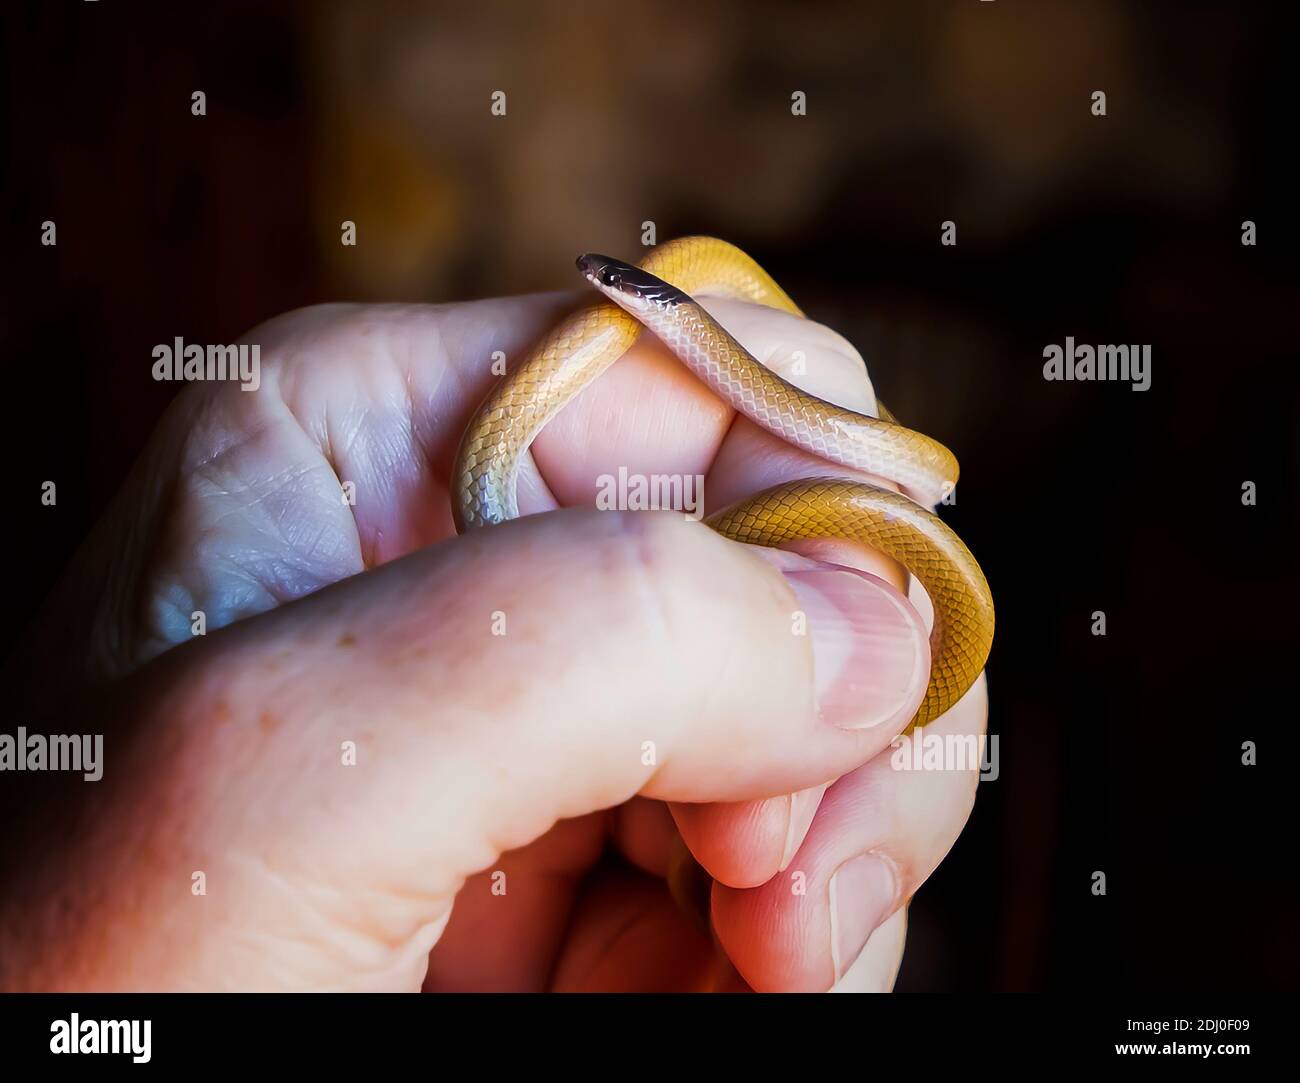 Perfil de cerca de la pequeña serpiente de cabeza negra del suroeste curvado alrededor de la mano y los dedos. Foto de stock